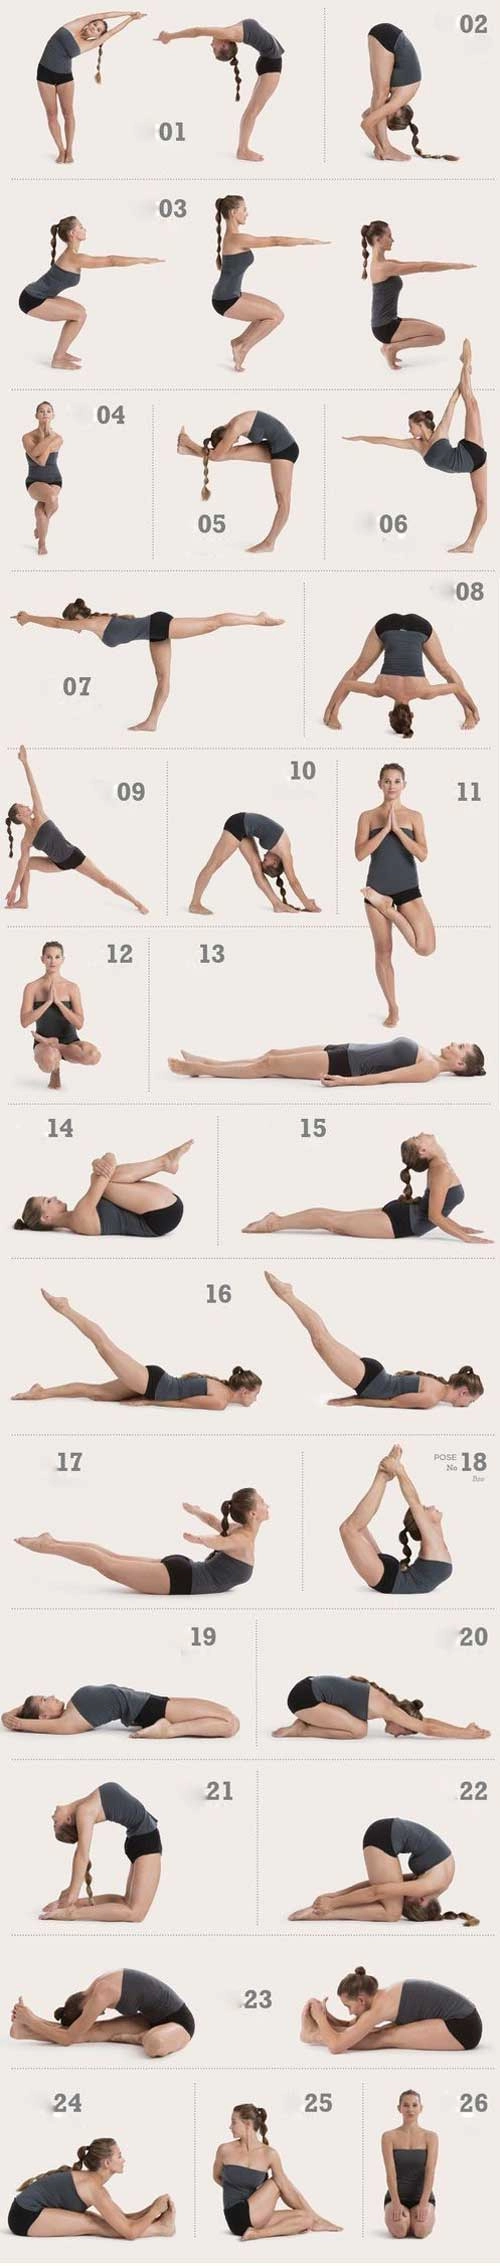 8 bài tập yoga tại nhà cho dáng xinh chàng mê tít - 8